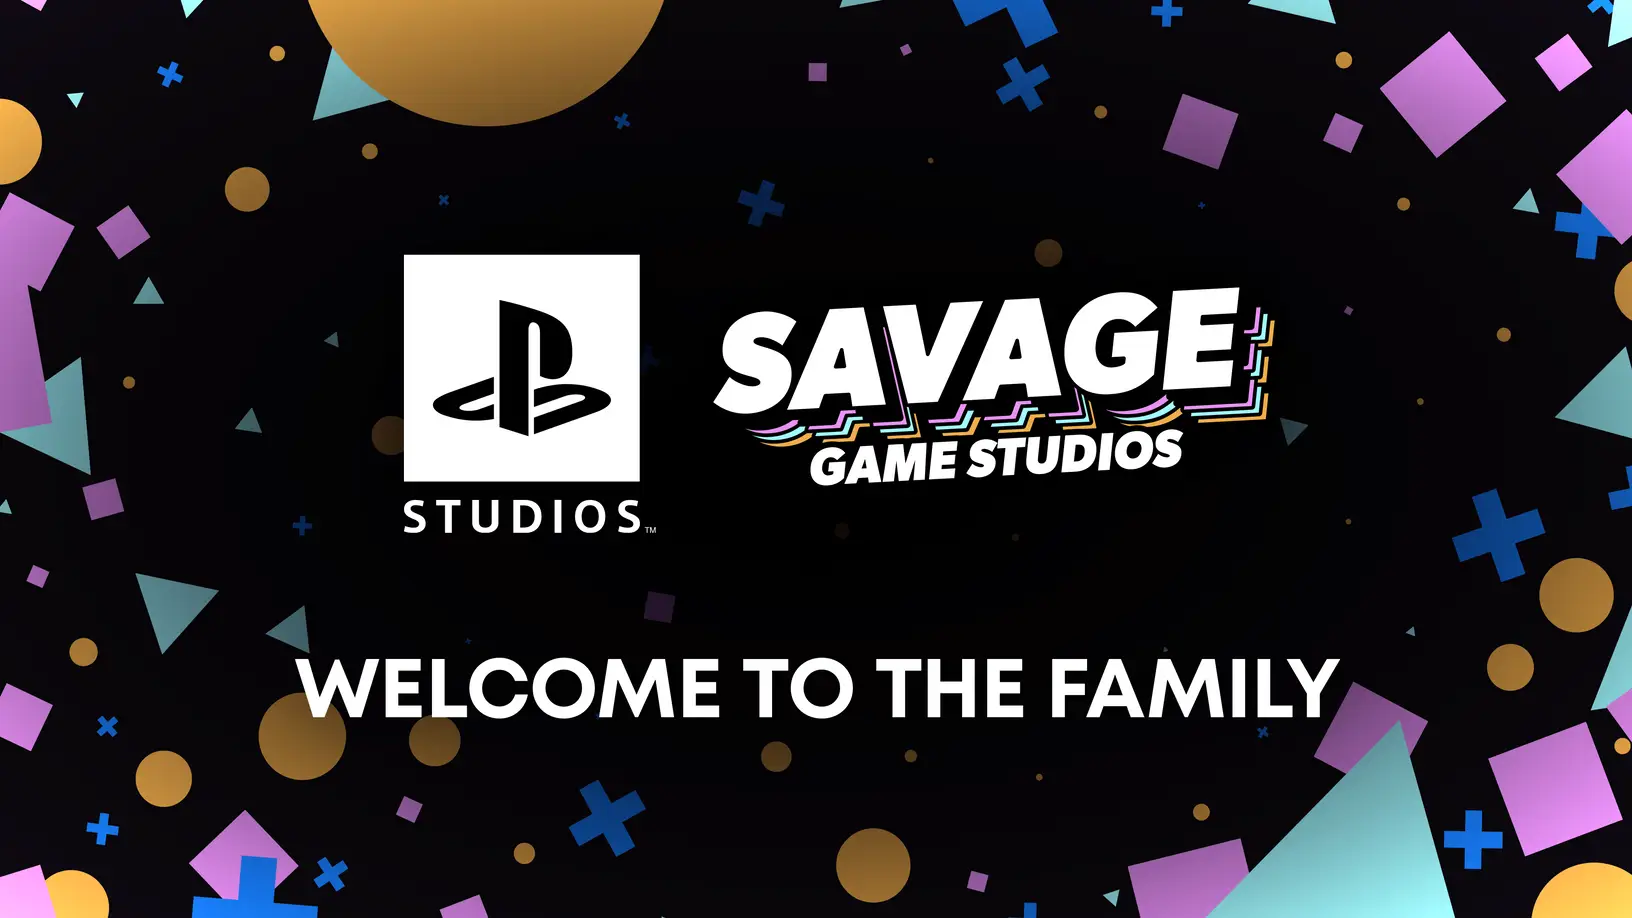 Sony compró Savage Game Studios, desarrollará juegos para celular basados en títulos de PlayStation